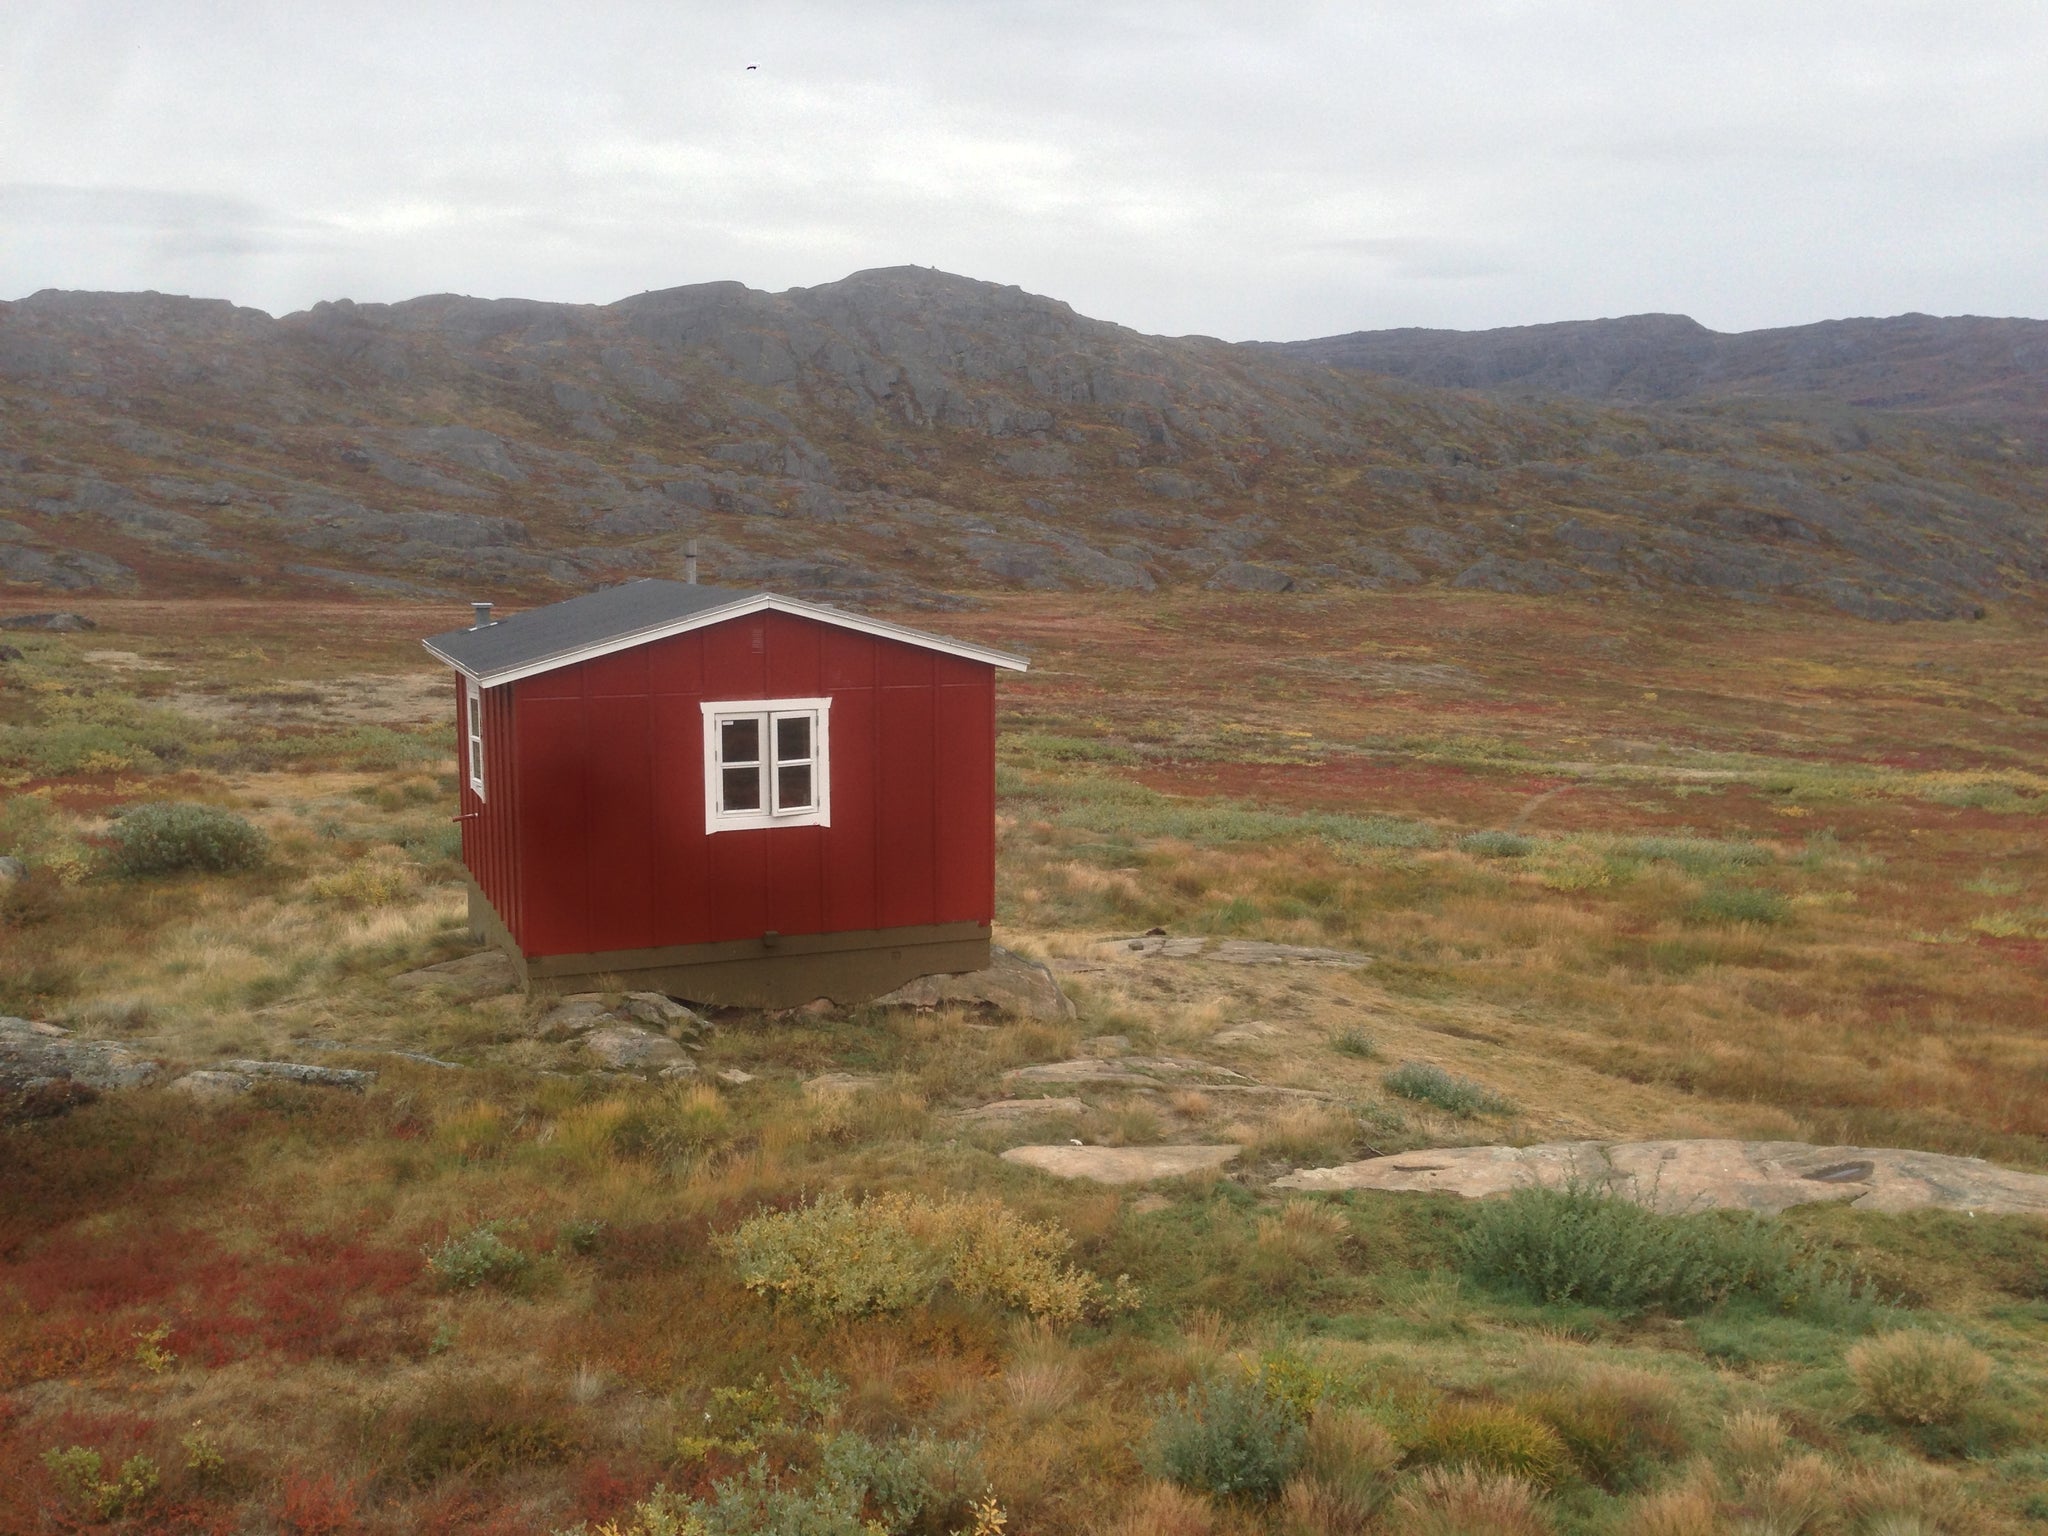 Eqalugaarniarfik Hut, Greenland, (Arctic Circle Trail)